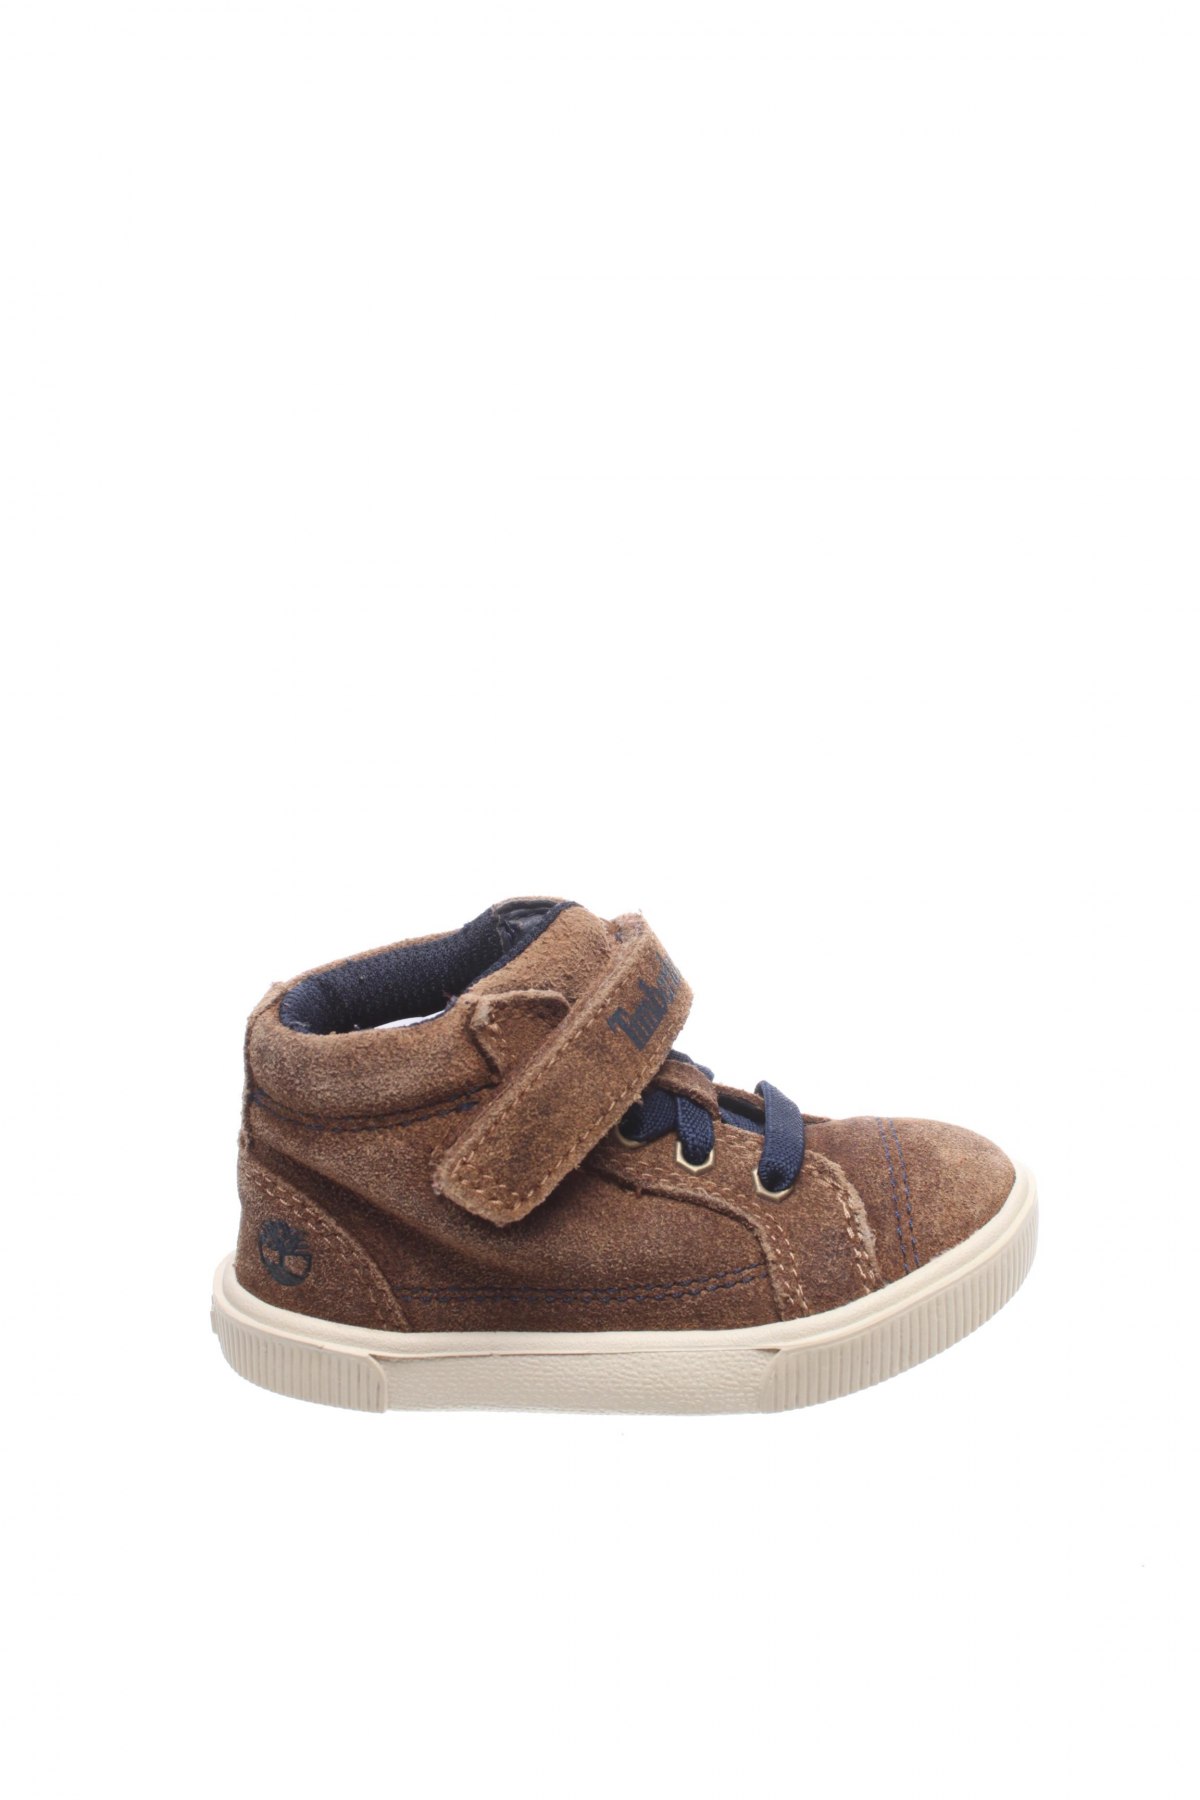 Παιδικά παπούτσια Timberland, Μέγεθος 21, Χρώμα Καφέ, Φυσικό σουέτ, Τιμή 15,85 €